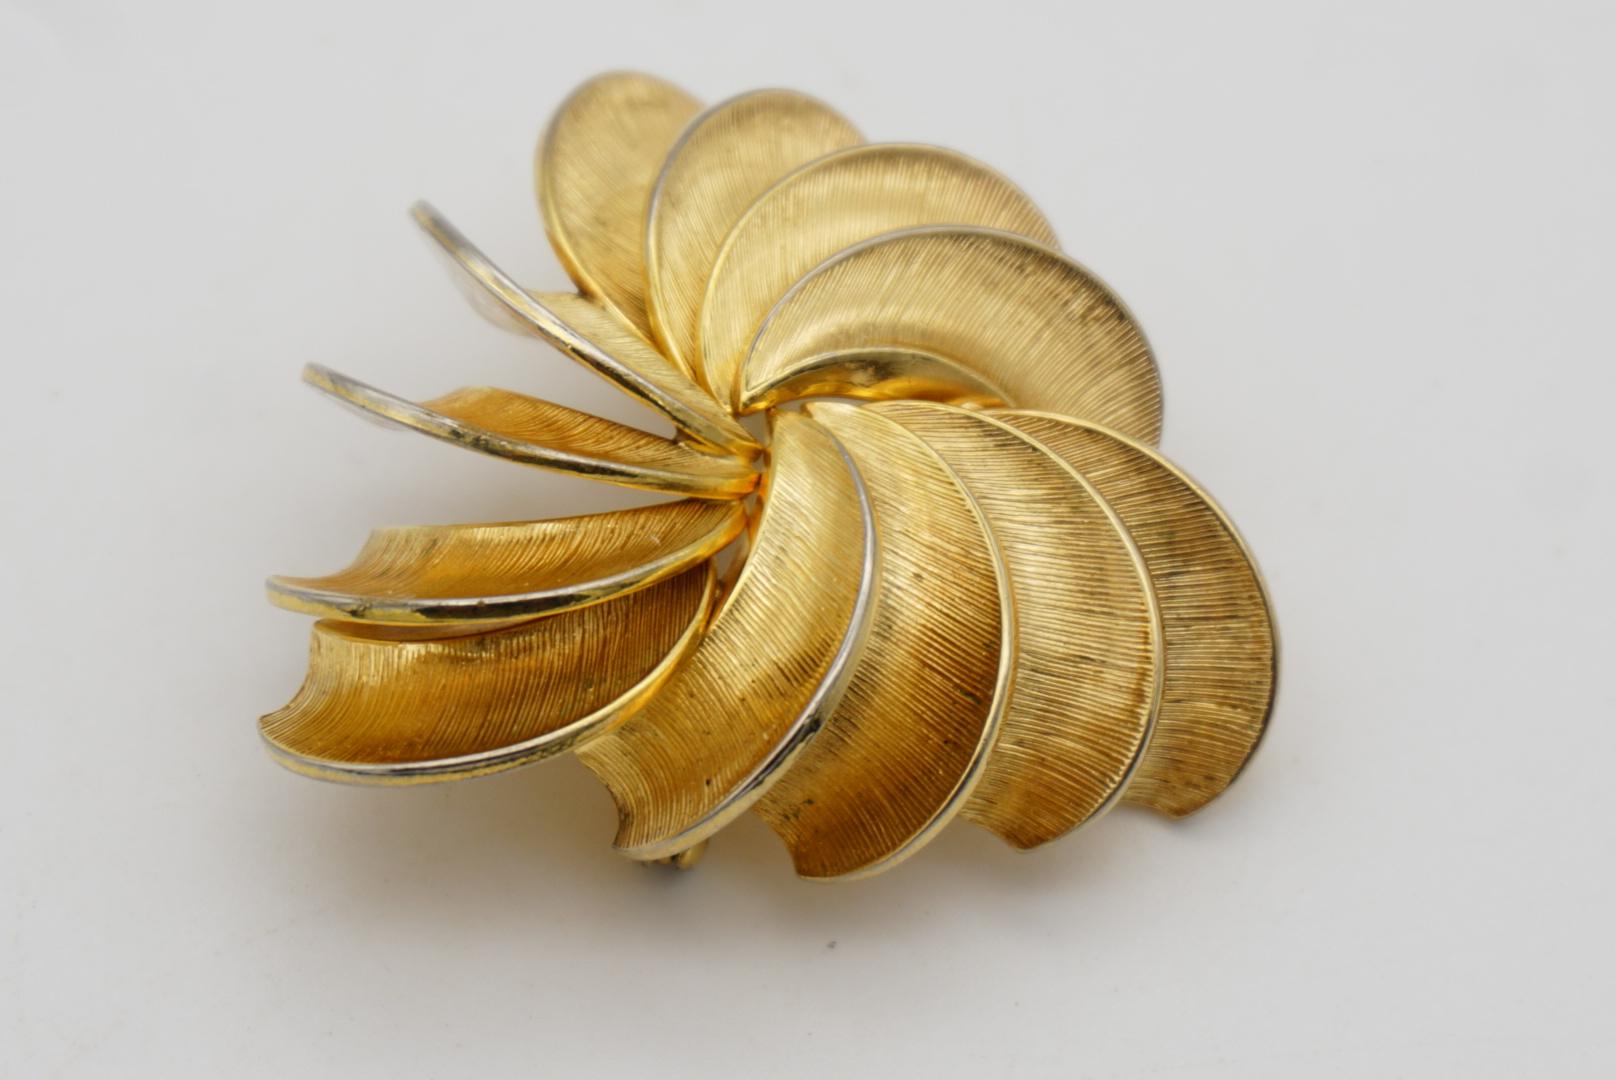 Christian Dior GROSSE 1958 Vintage Swirl Twist Fan Blade Triangle Gold Brooch  For Sale 3